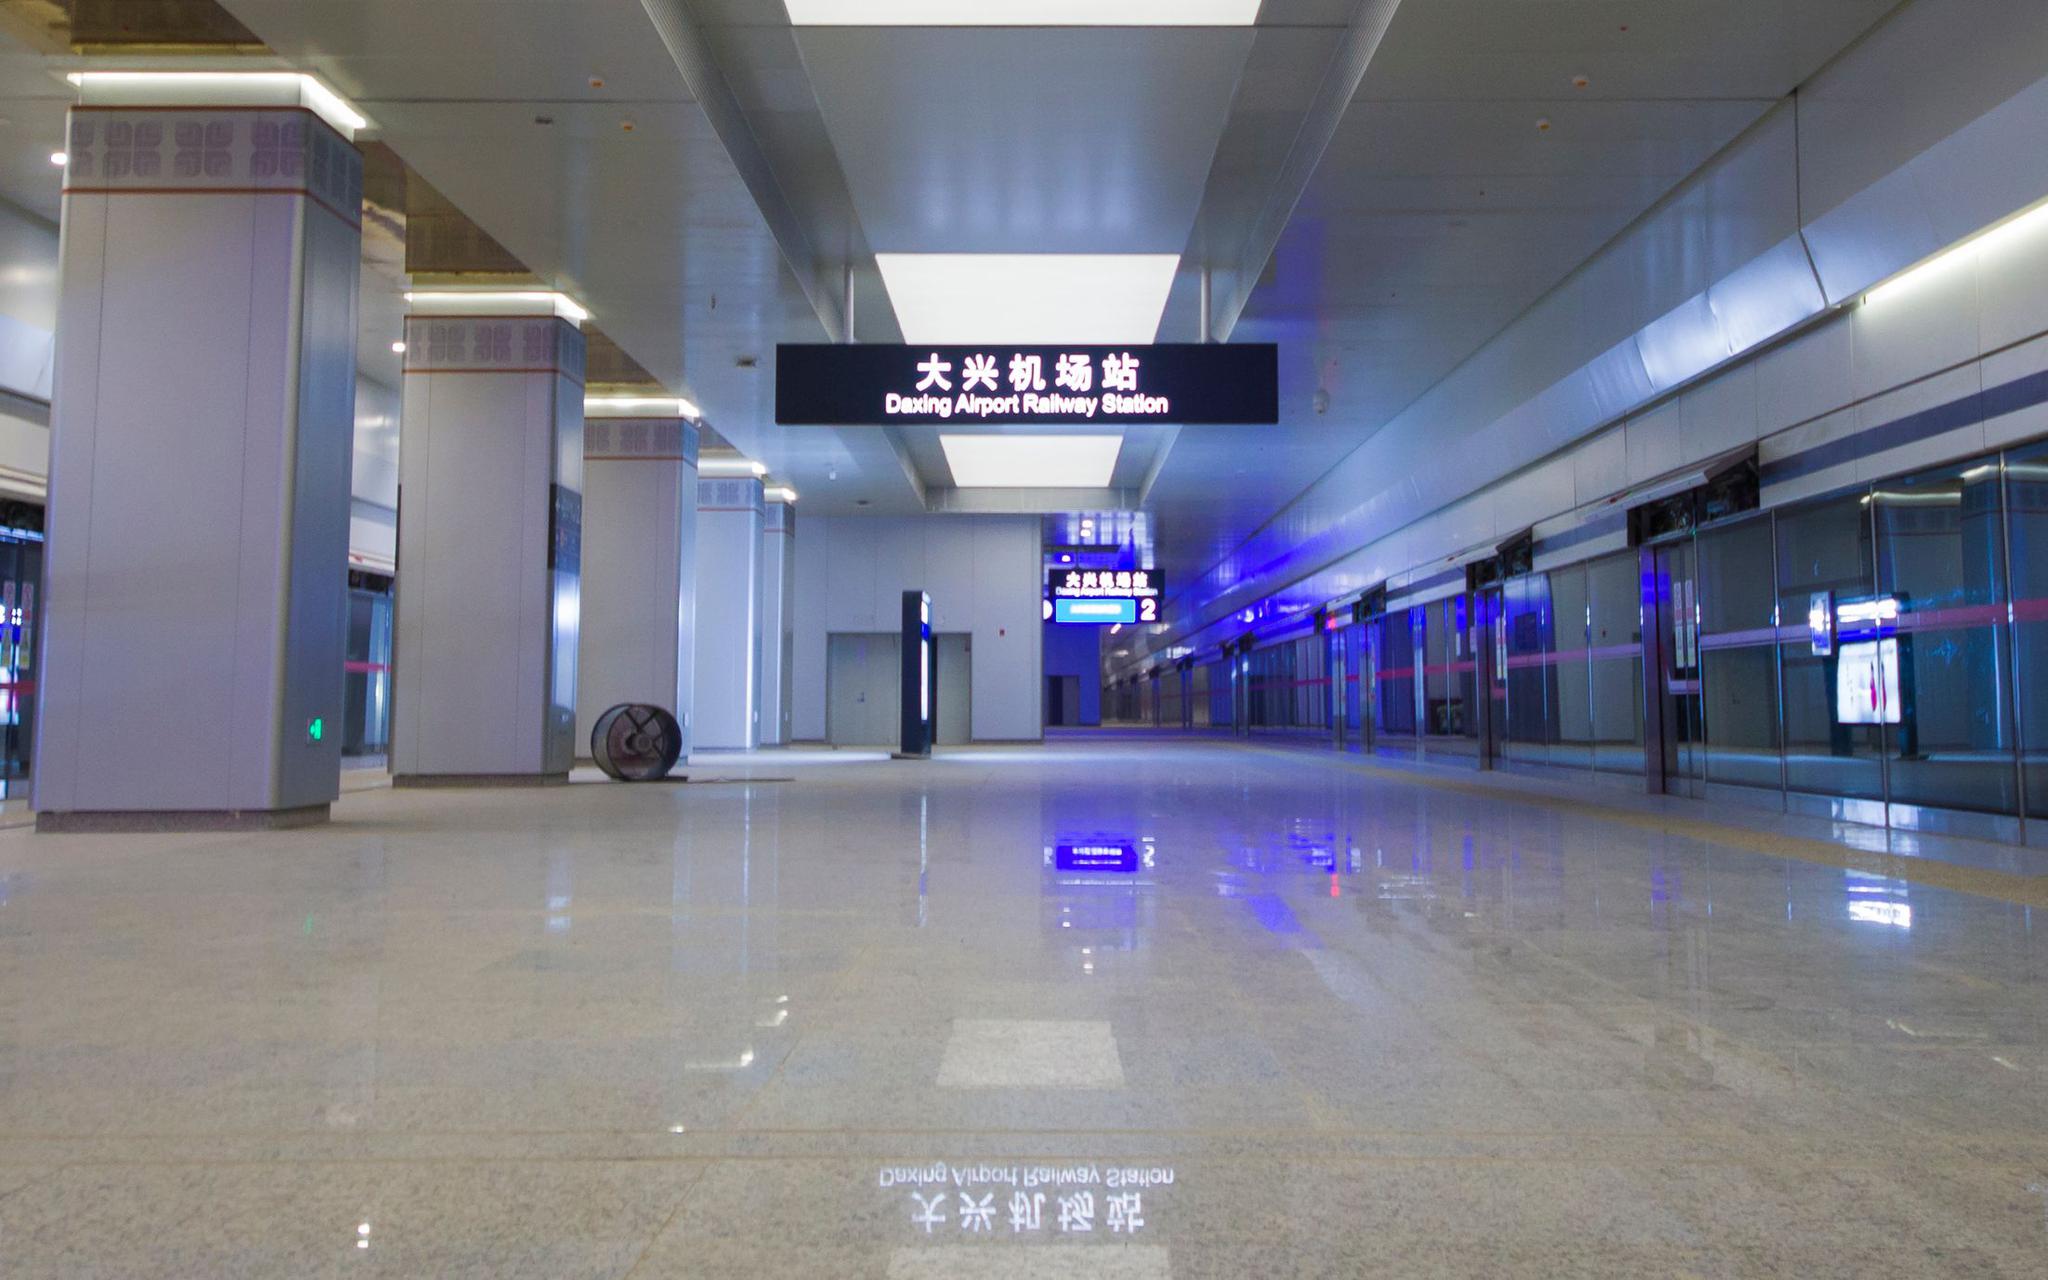 京雄城际铁路(北京段)大兴机场站.图/北京铁路局